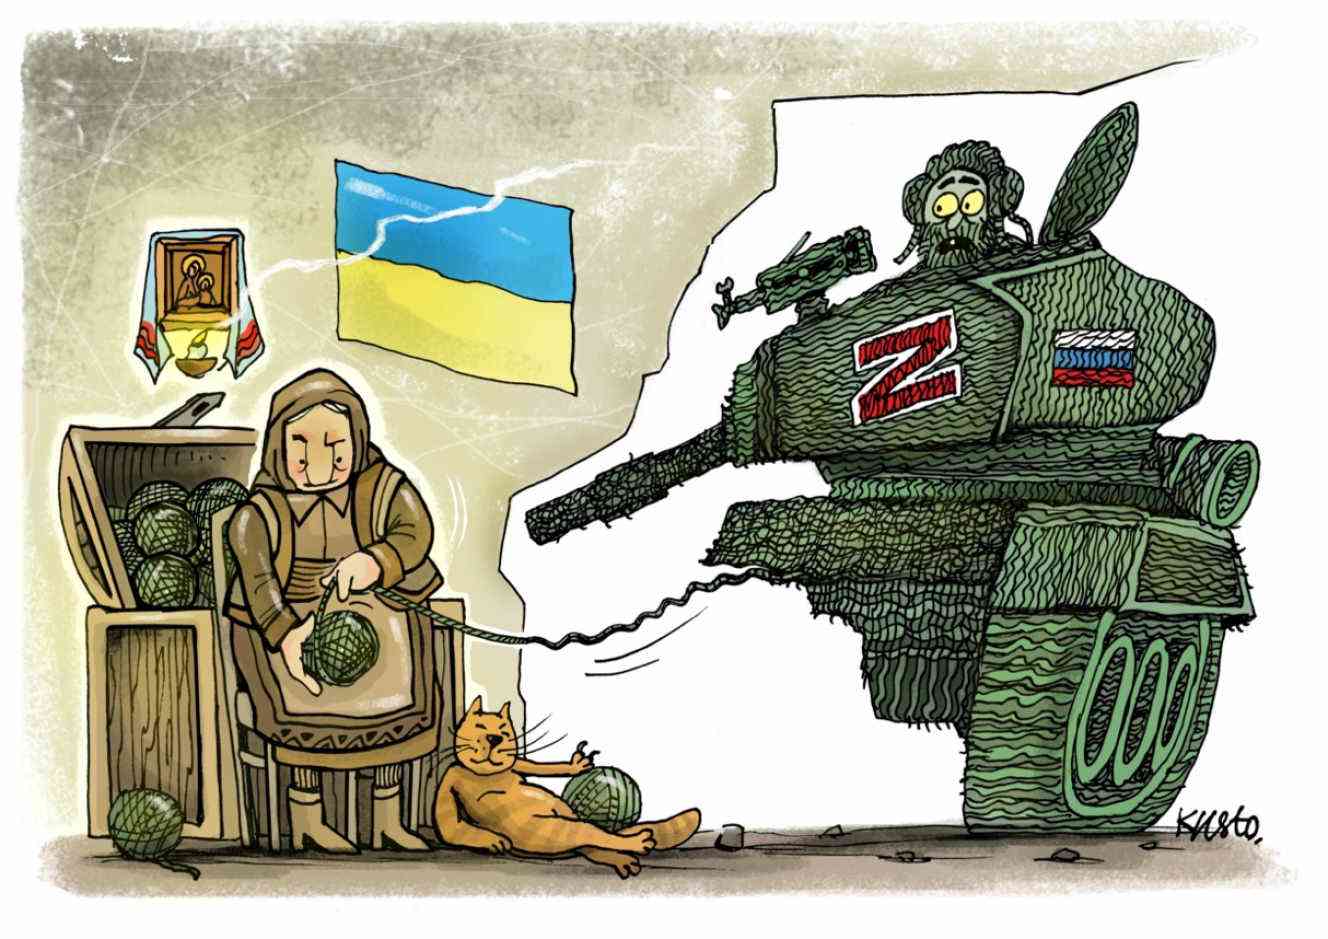 L’umorismo ucraino in tempo di guerra onorato da Charlie Hebdo